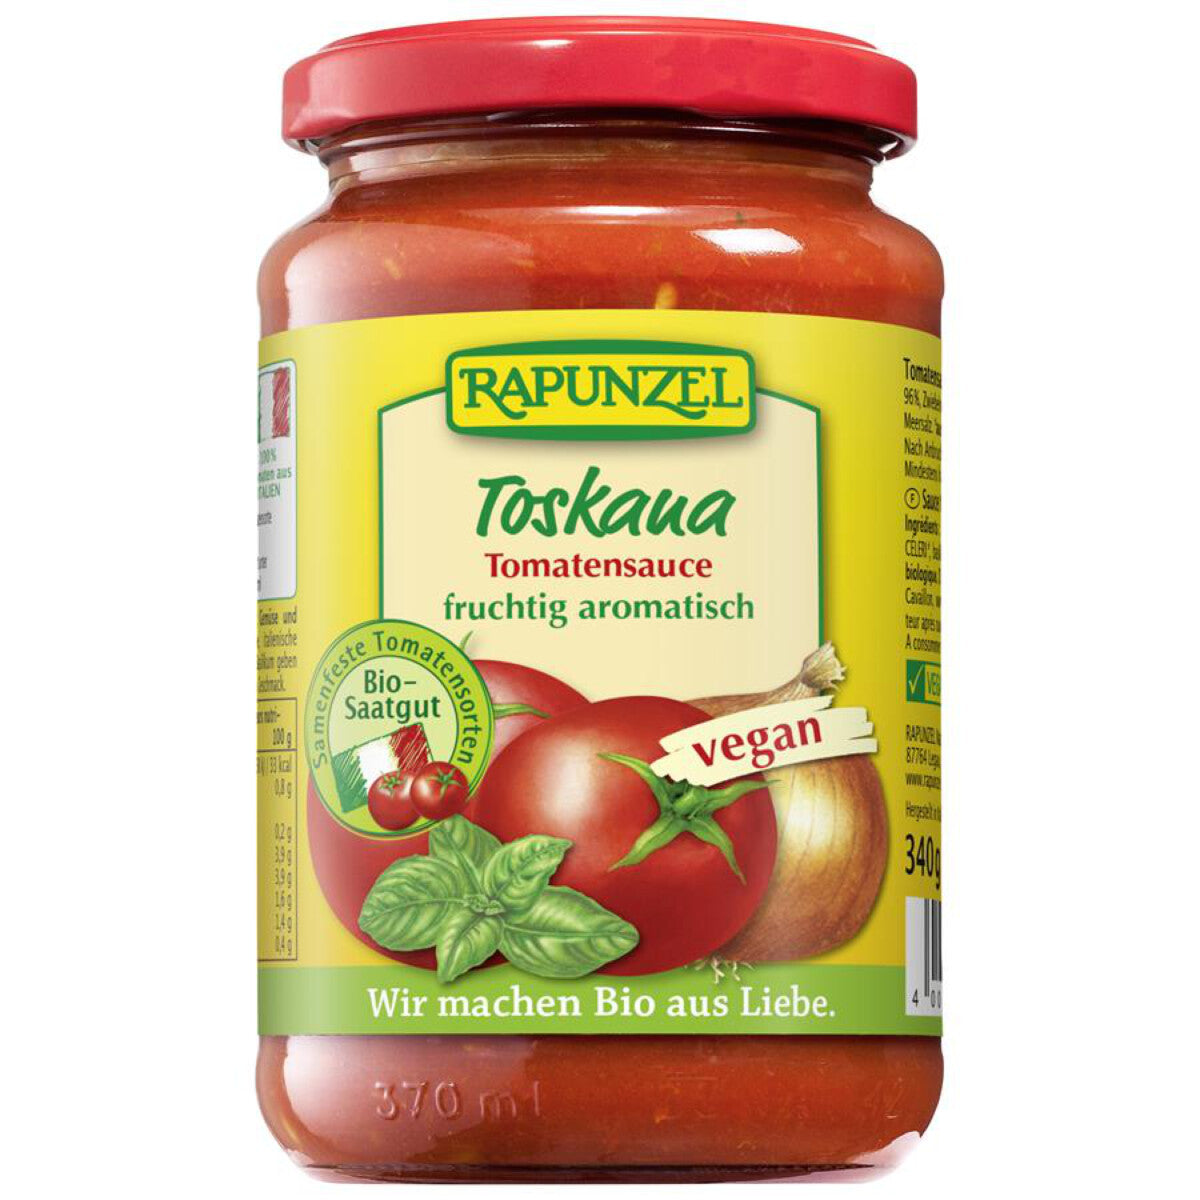 RAPUNZEL Tomatensauce Toskana - 340 g